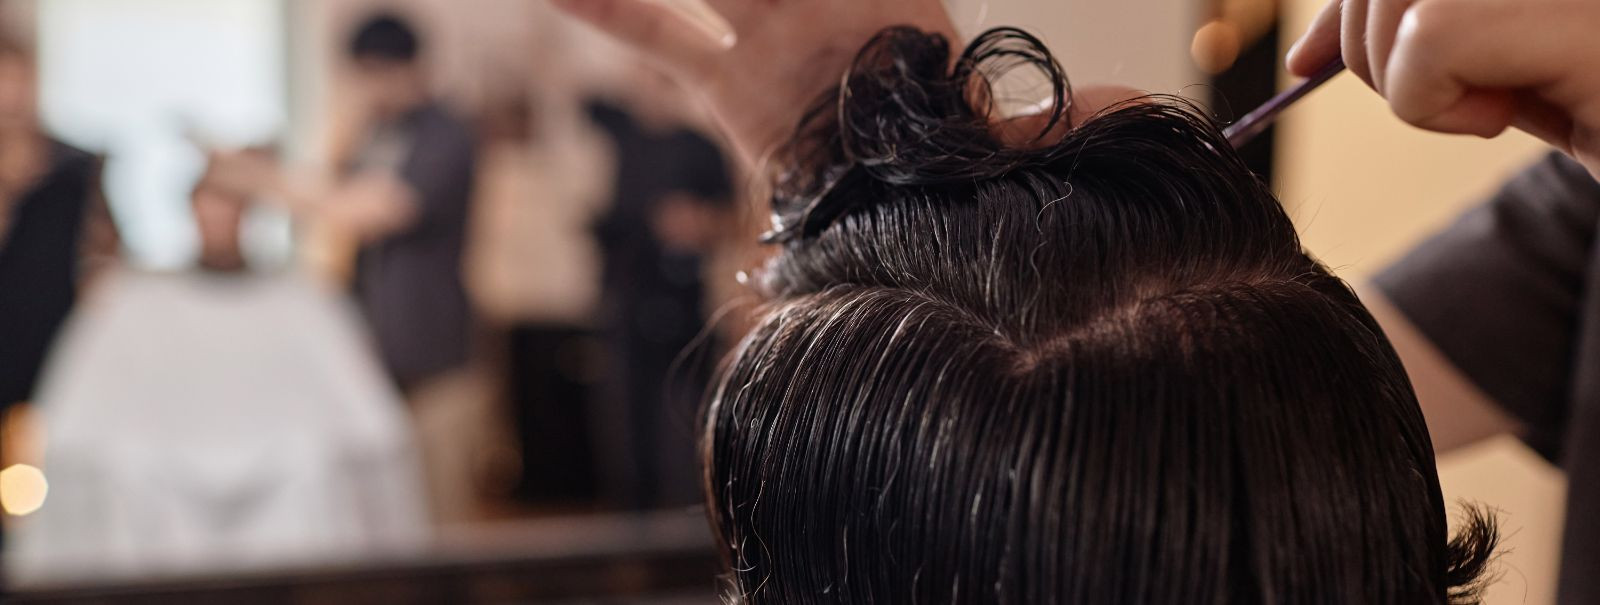 Meeste juuksehooldus on oluline osa isiklikust stiilist ja hügieenist. See pole ainult juuste puhtana hoidmine; see on ka stiilse ja elustiiliga sobiva välimuse